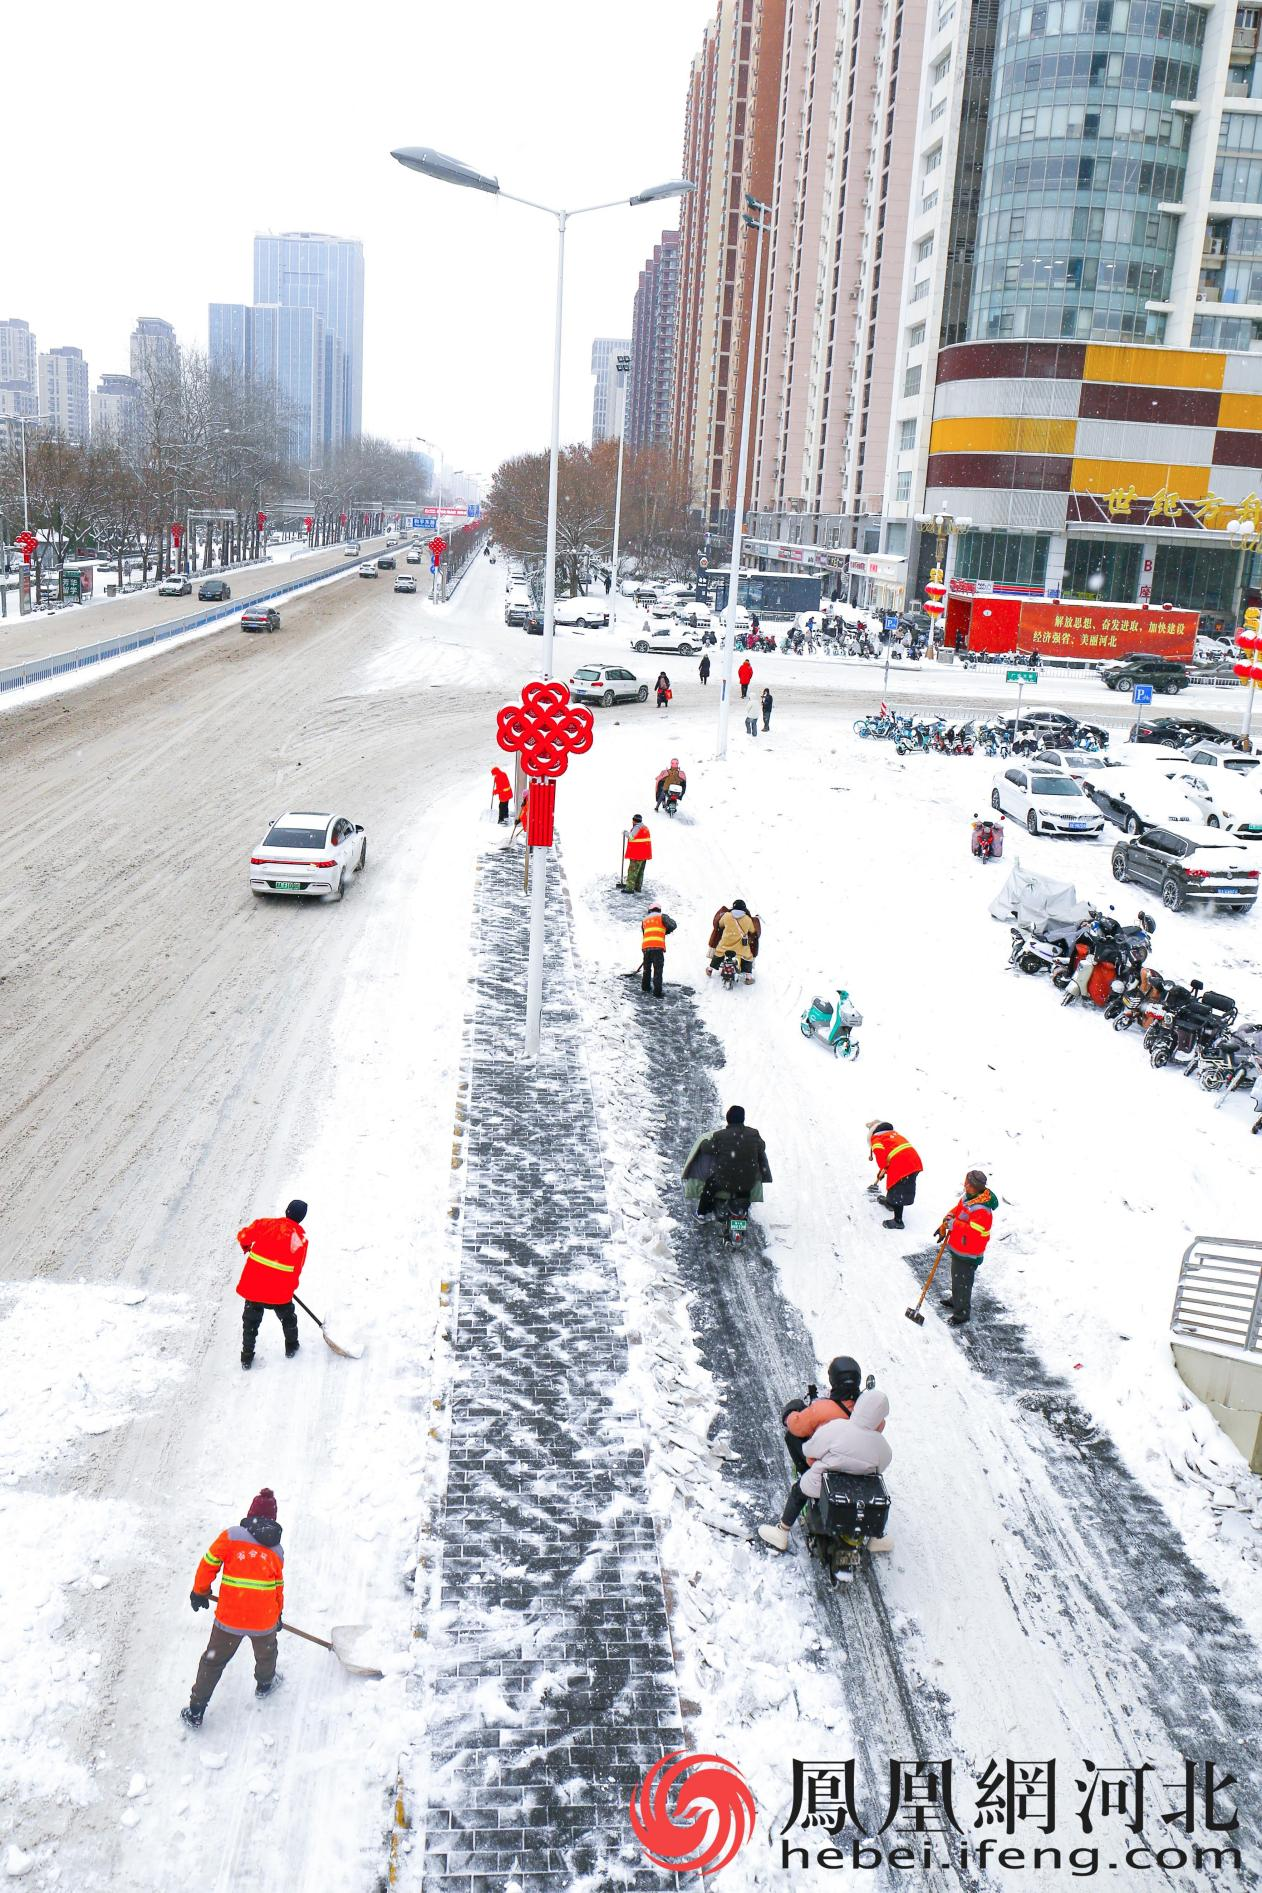 雪中的环卫工人与高高挂起的中国结一样，是街道上最靓丽的风景线。